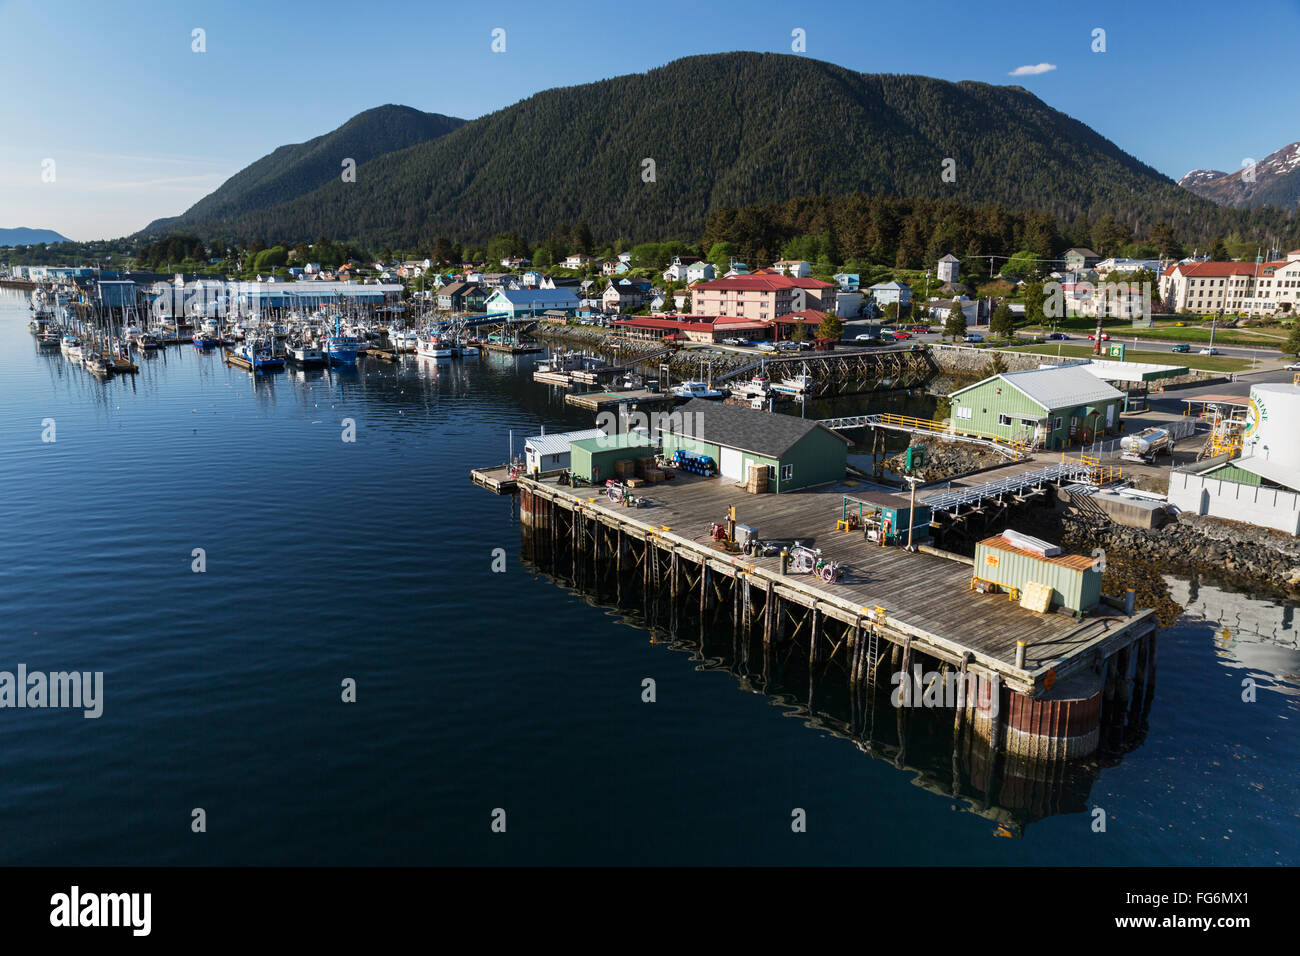 Vue aérienne de l'embarcadère du port de Sitka avec bateaux de pêche amarré à l'arrière-plan, Sitka, sud-est de l'Alaska, USA, l'été Banque D'Images